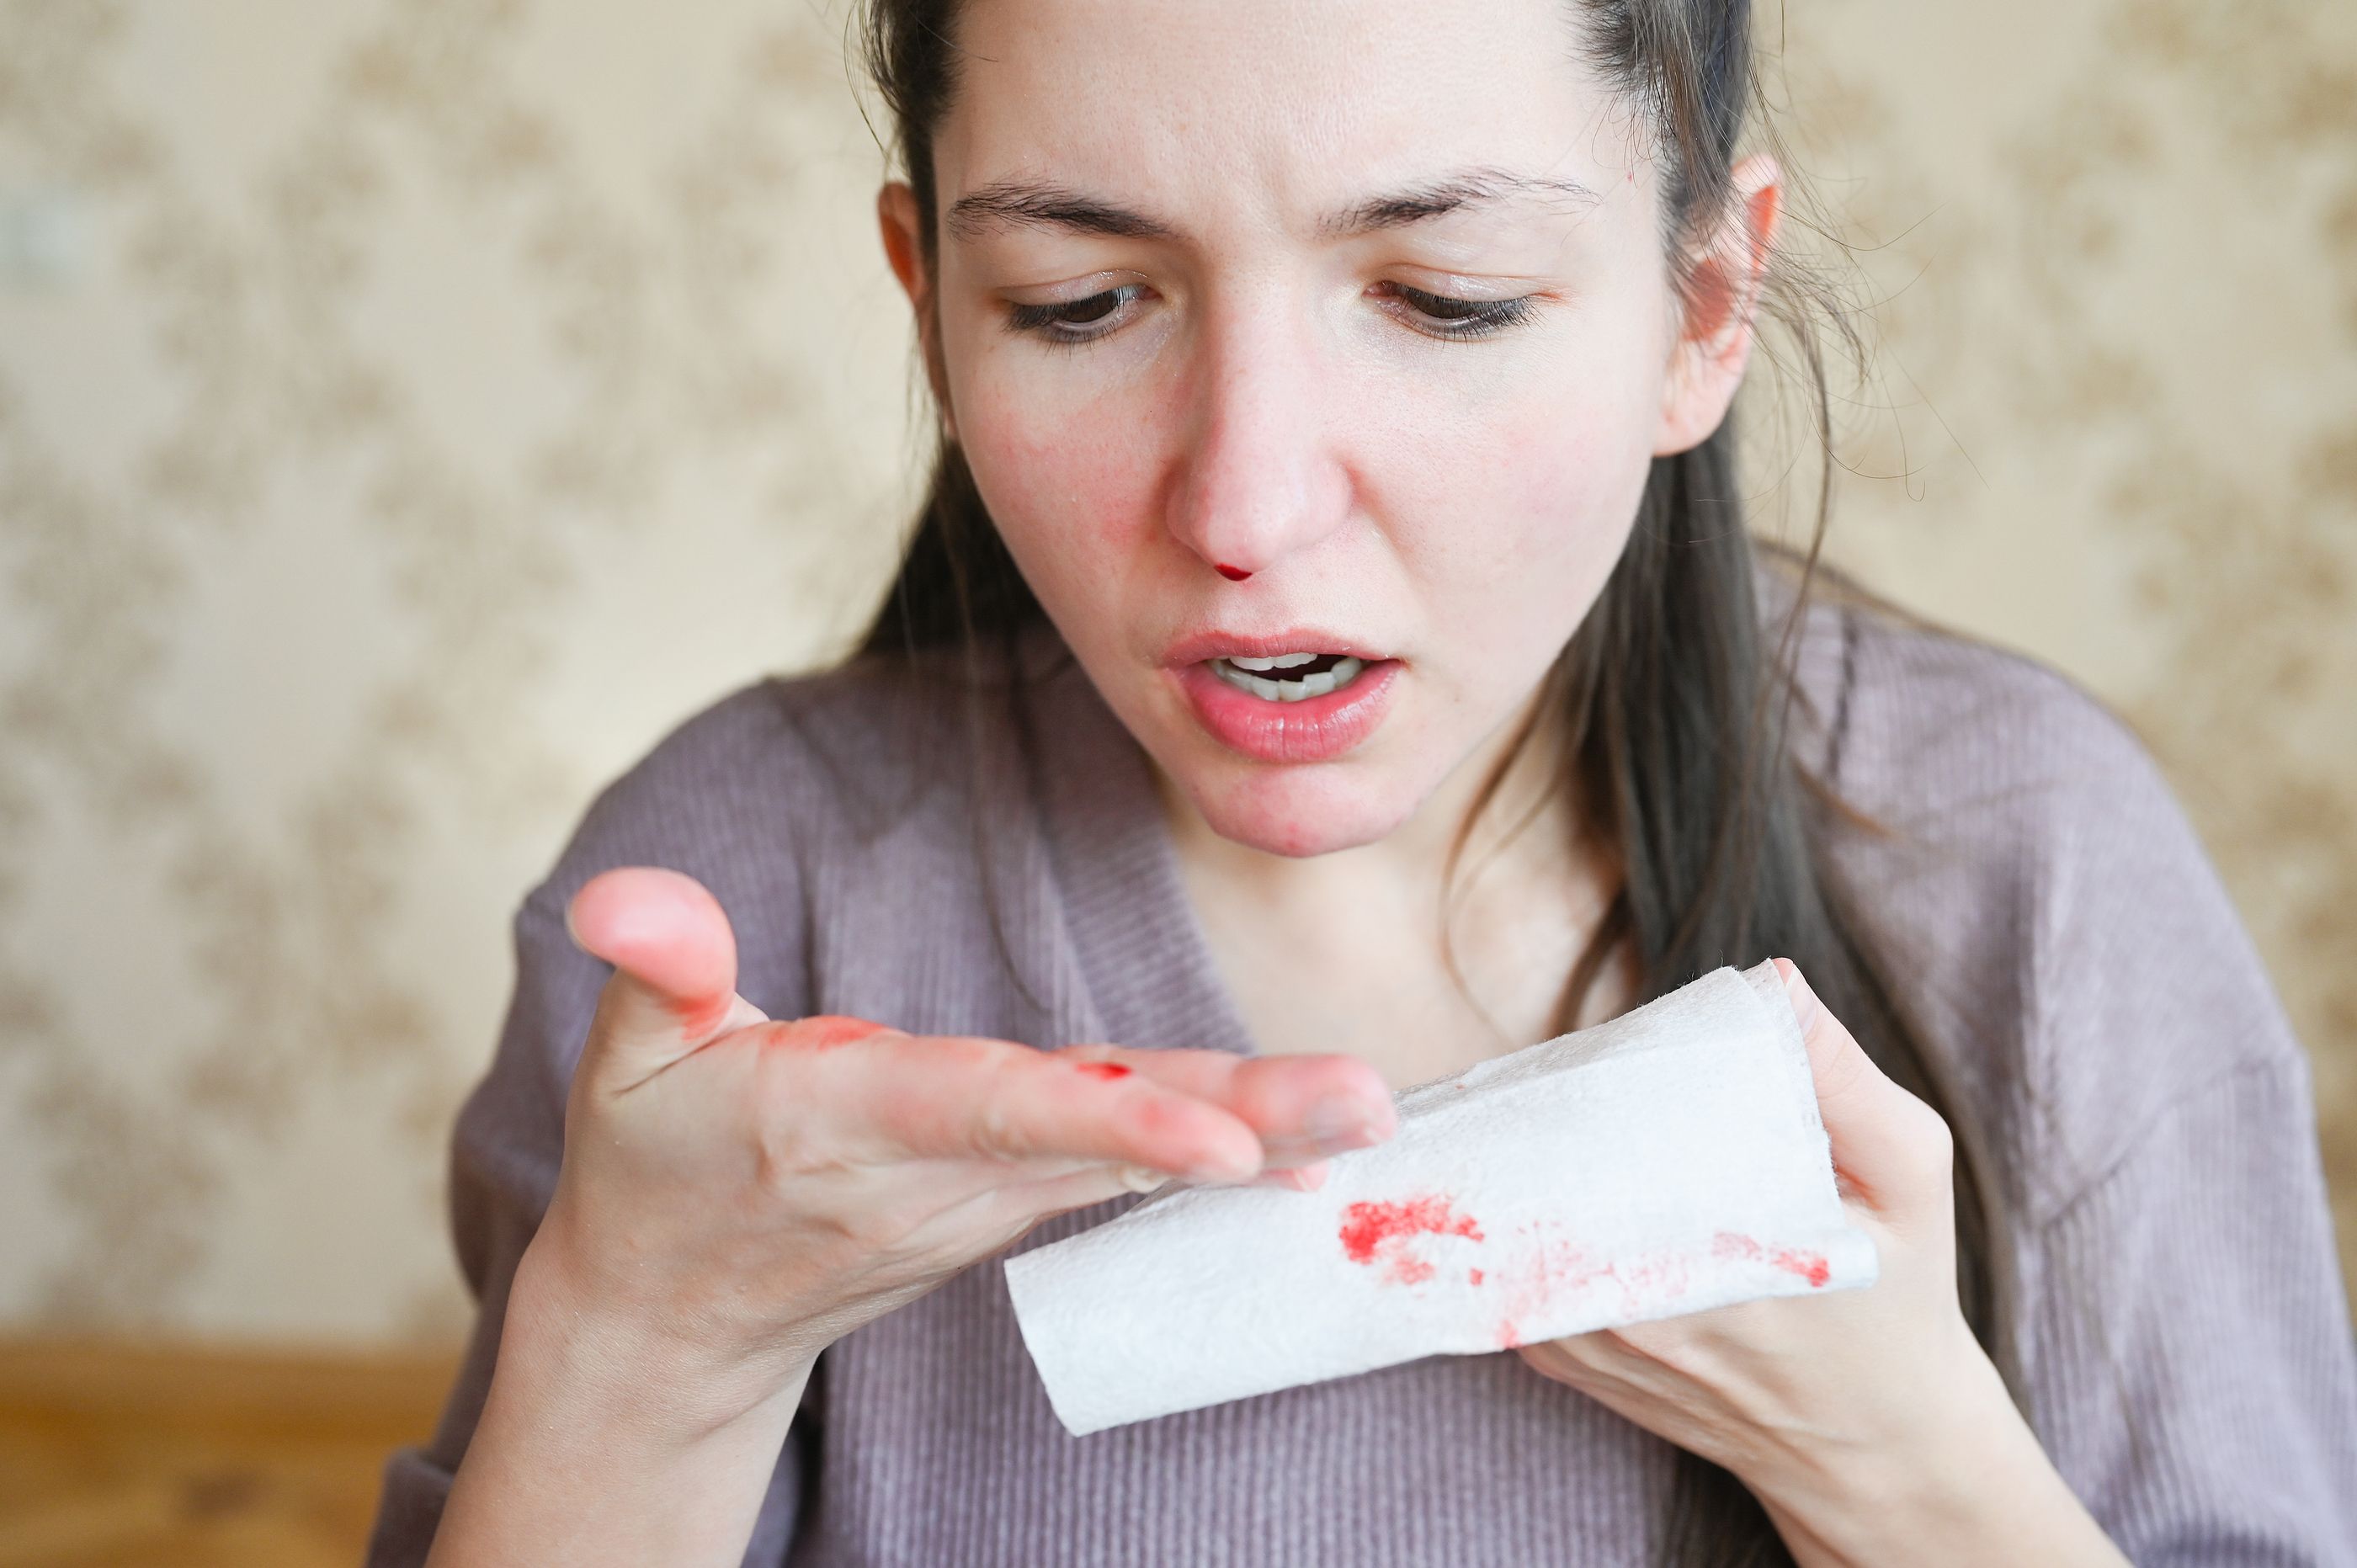 analogía Persona australiana Saqueo Por qué sangra la nariz? ¿Puede implicar algún peligro?